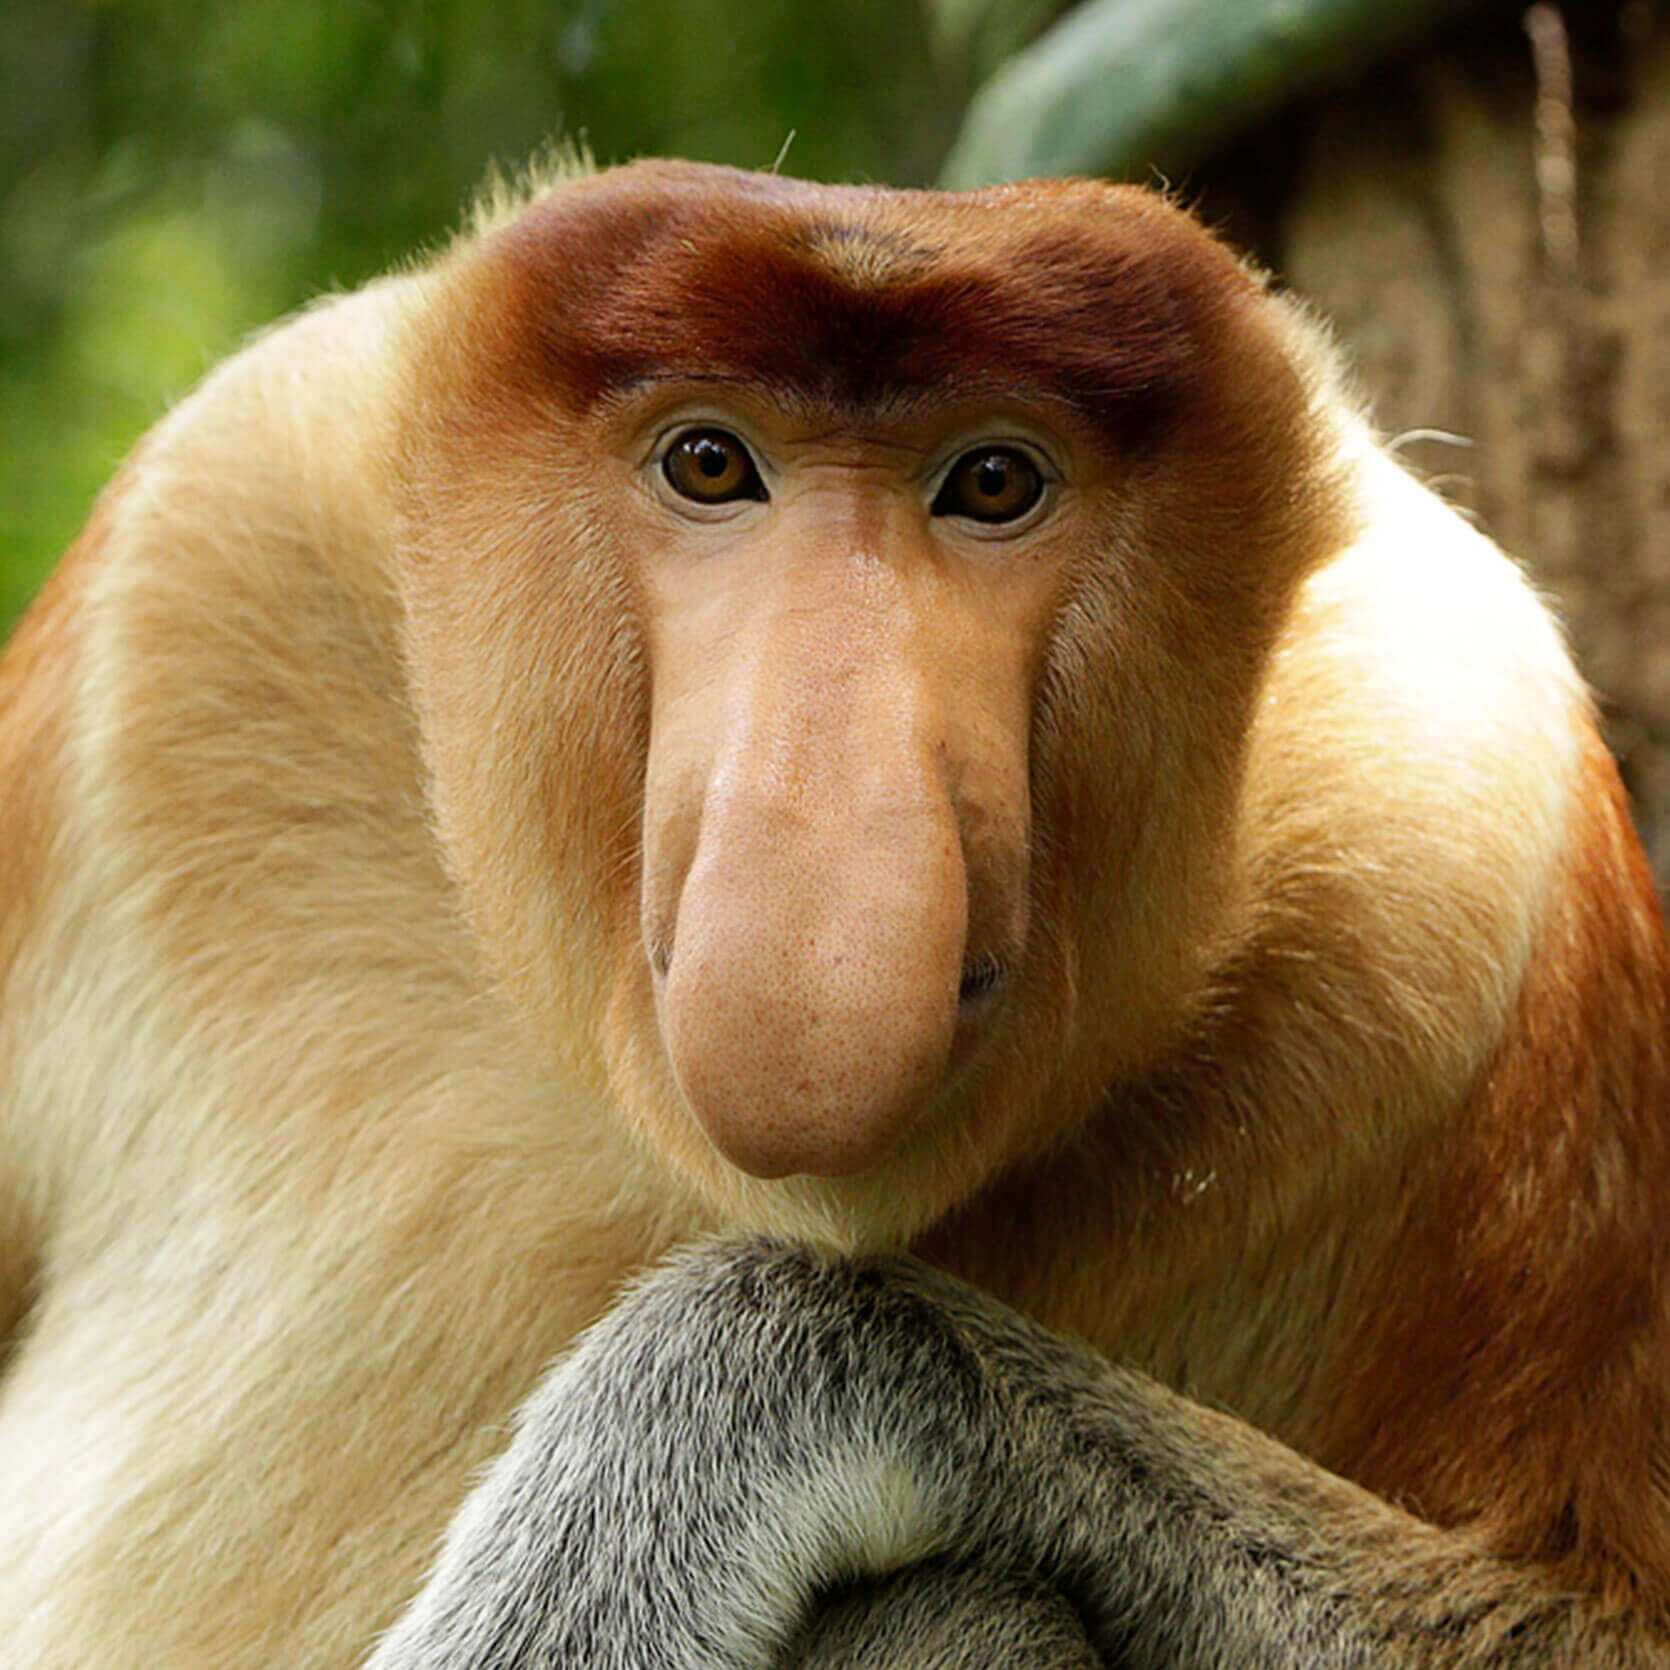 Proboscis Monkey  National Geographic